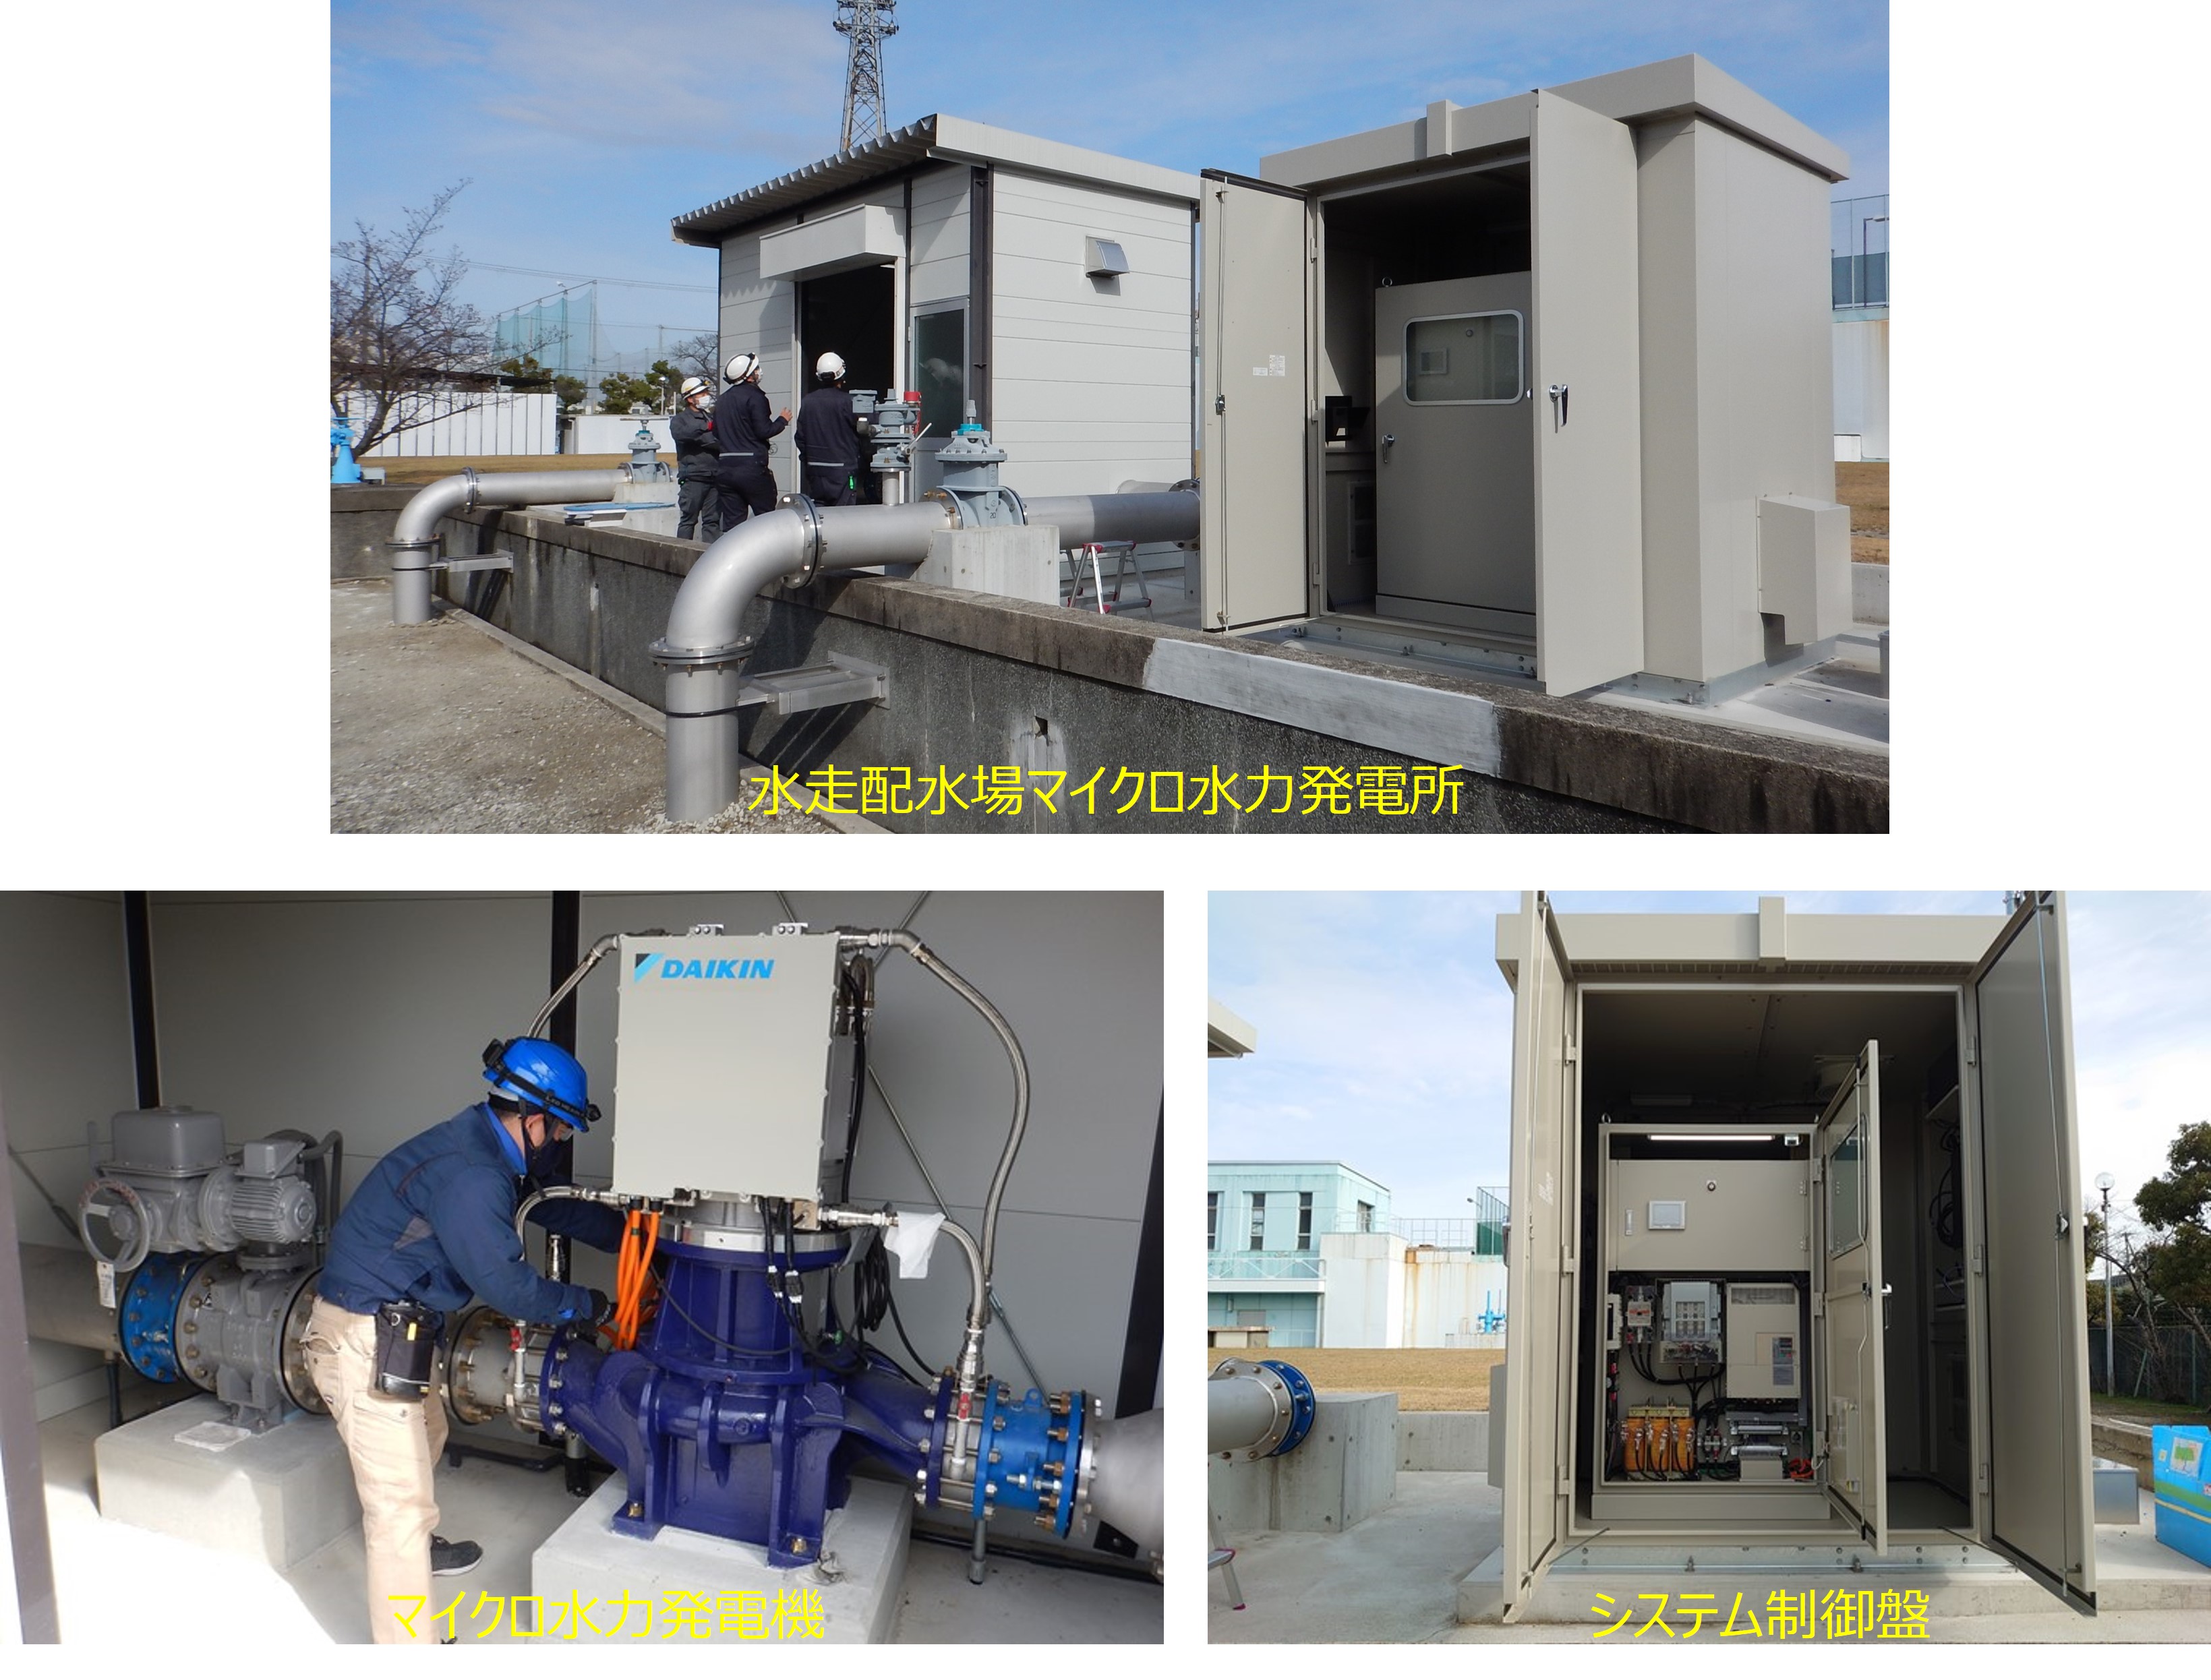 東大阪市水走配水場マイクロ水力発電所のようす